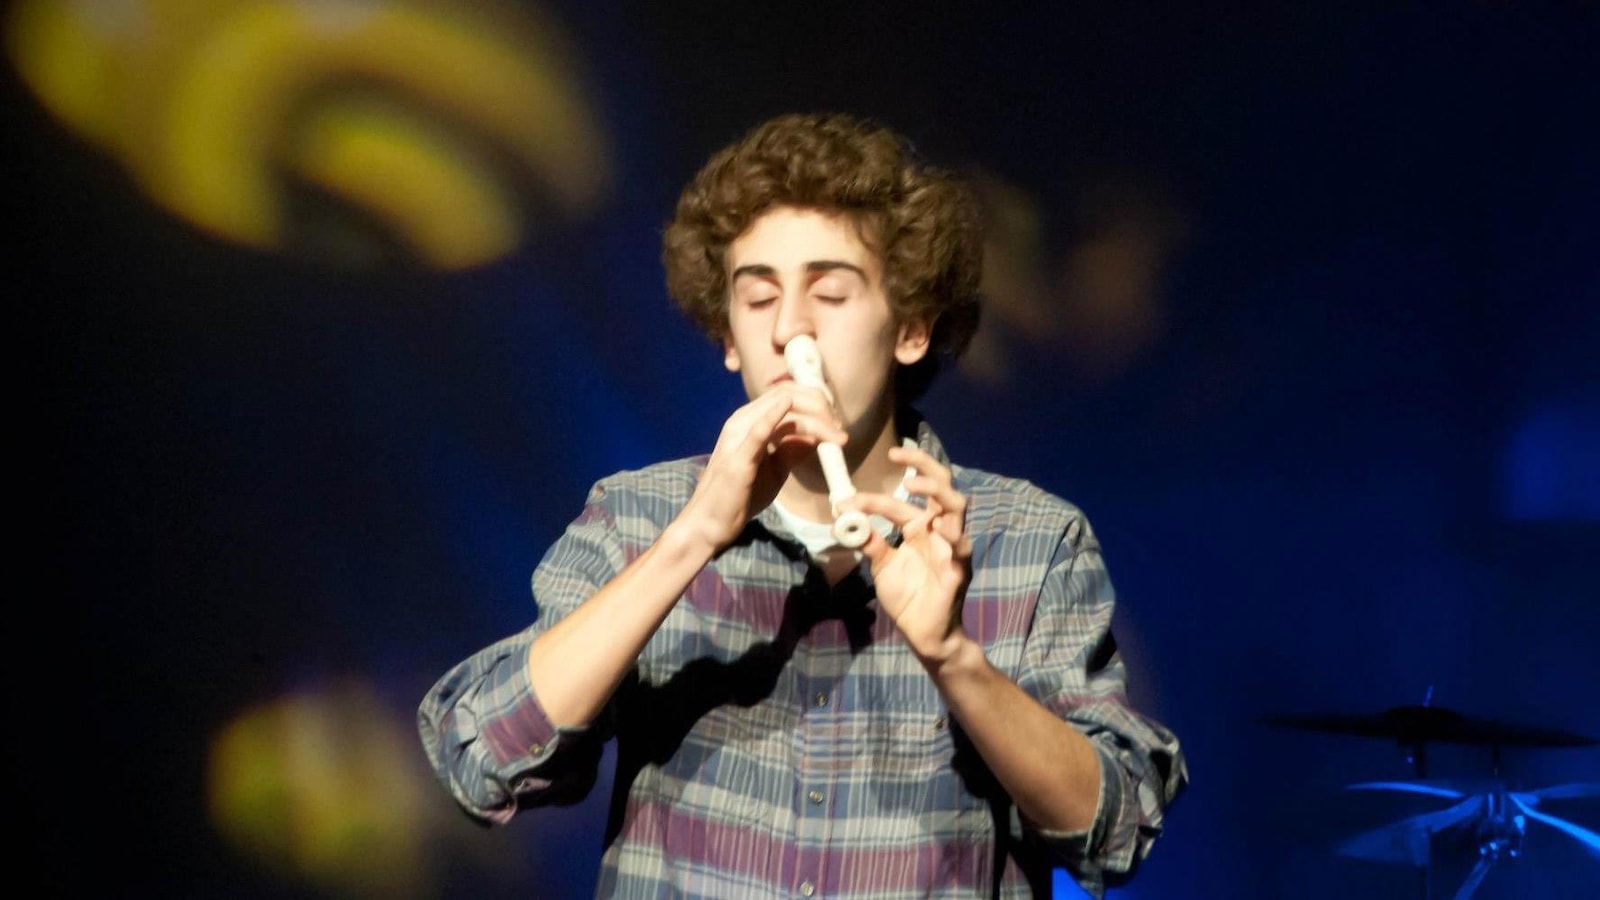 Le jeune homme joue de la flute avec son nez et ferme les yeux.